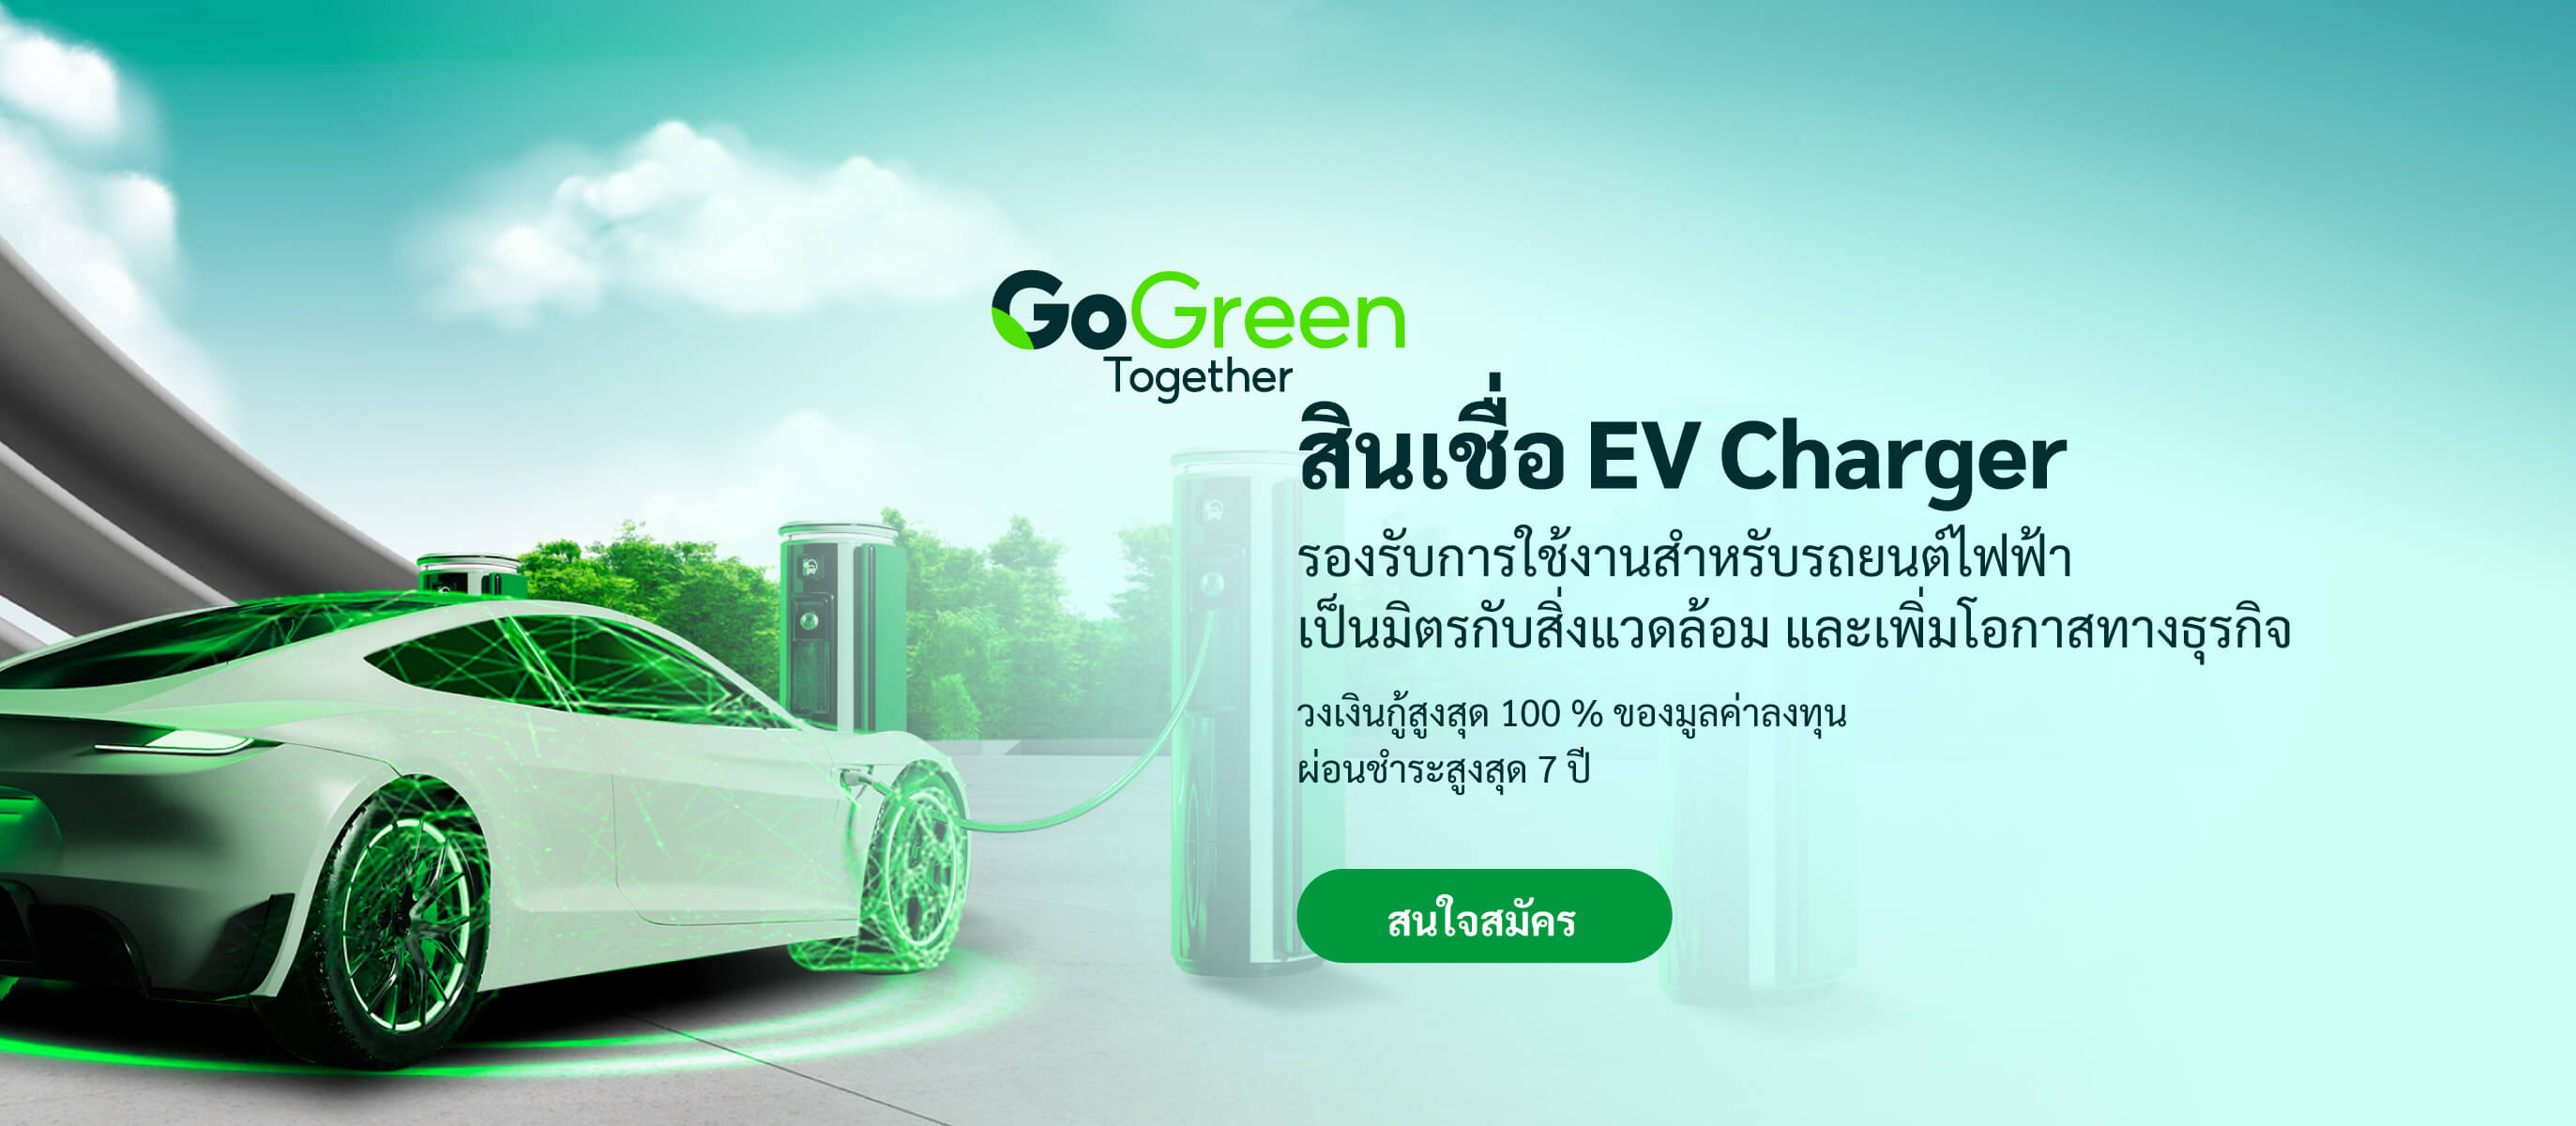 สินเชื่อ EV Charger รองรับการใช้งานสำหรับรถยนต์ไฟฟ้า เป็นมิตรกับสิ่งแวดล้อม และเพิ่มโอกาสทางธุรกิจ